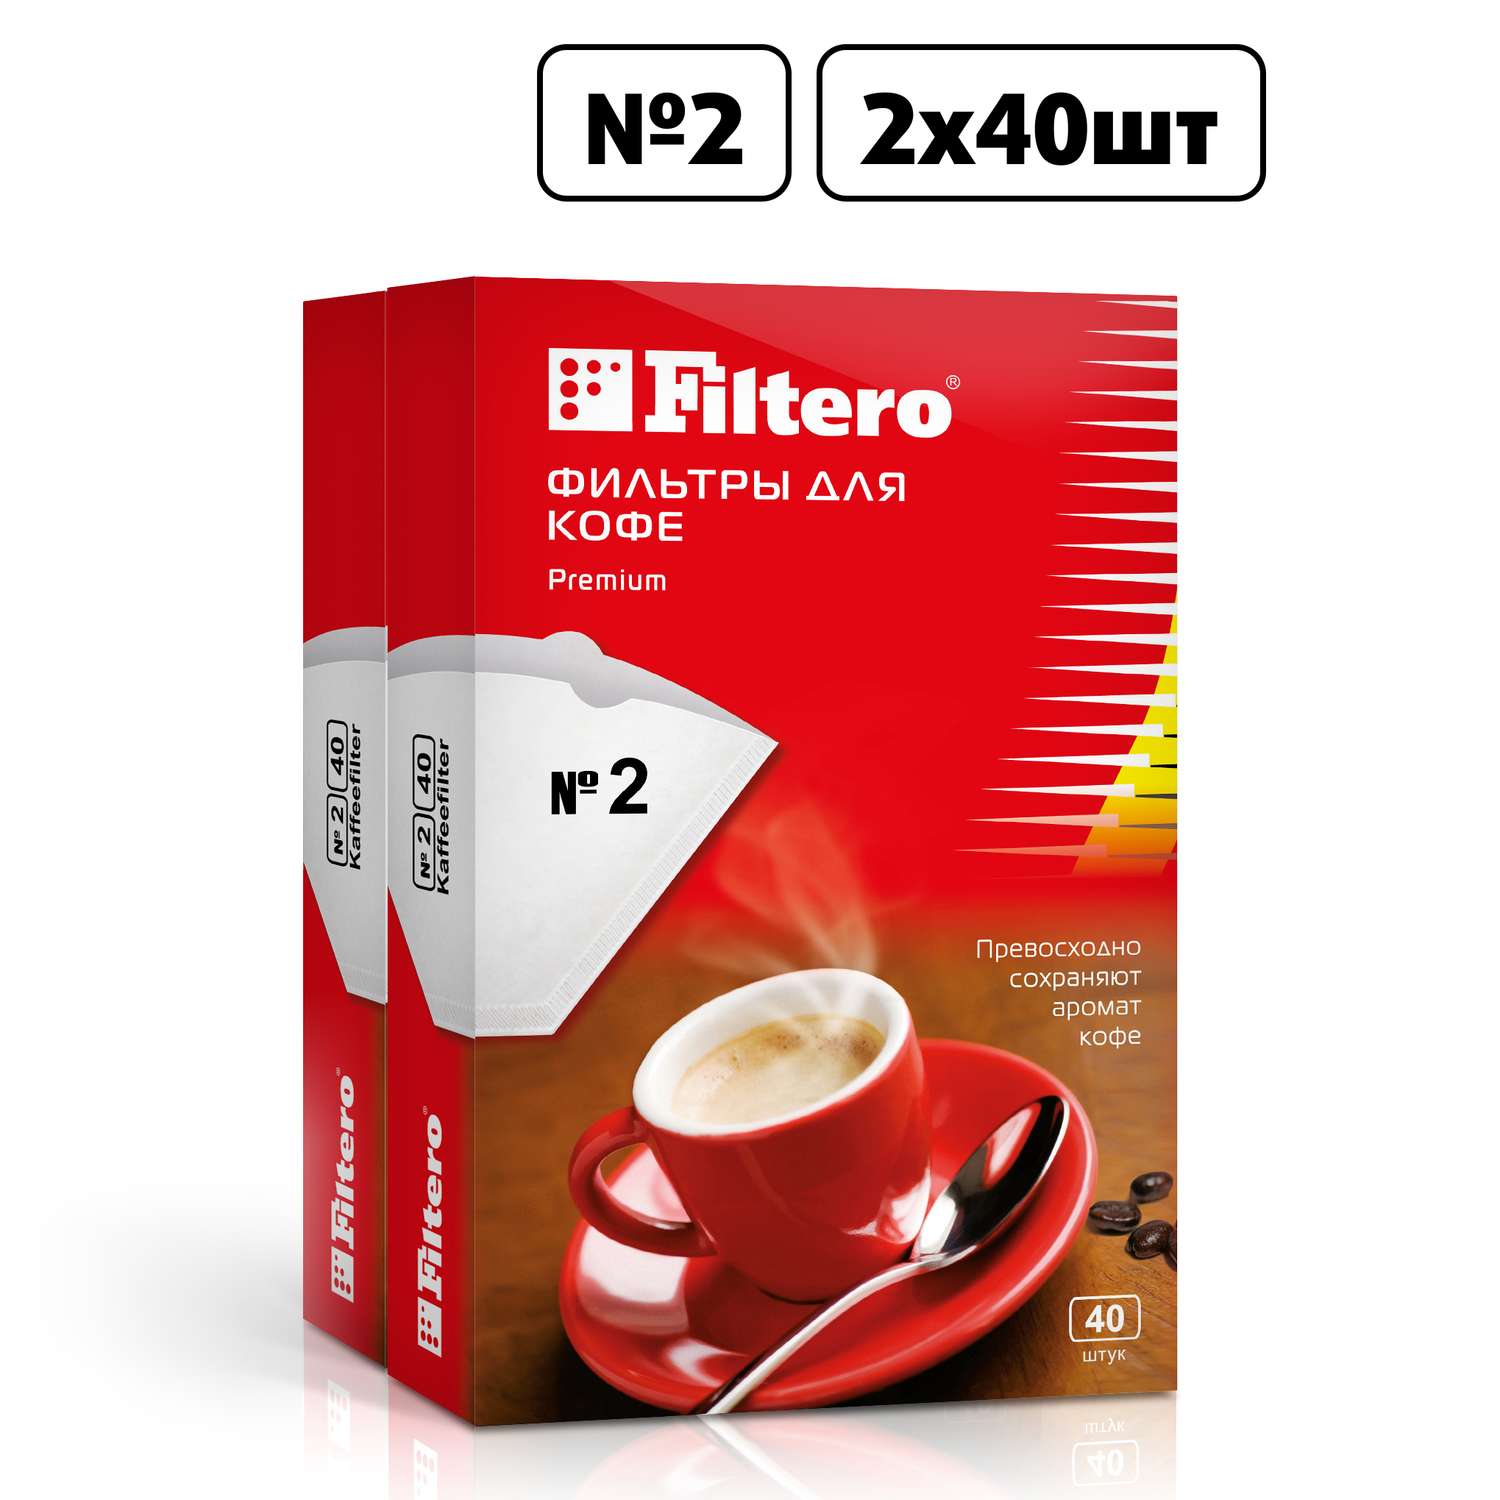 Комплект фильтров Filtero для кофеварки №2/80шт белые Premium - фото 1